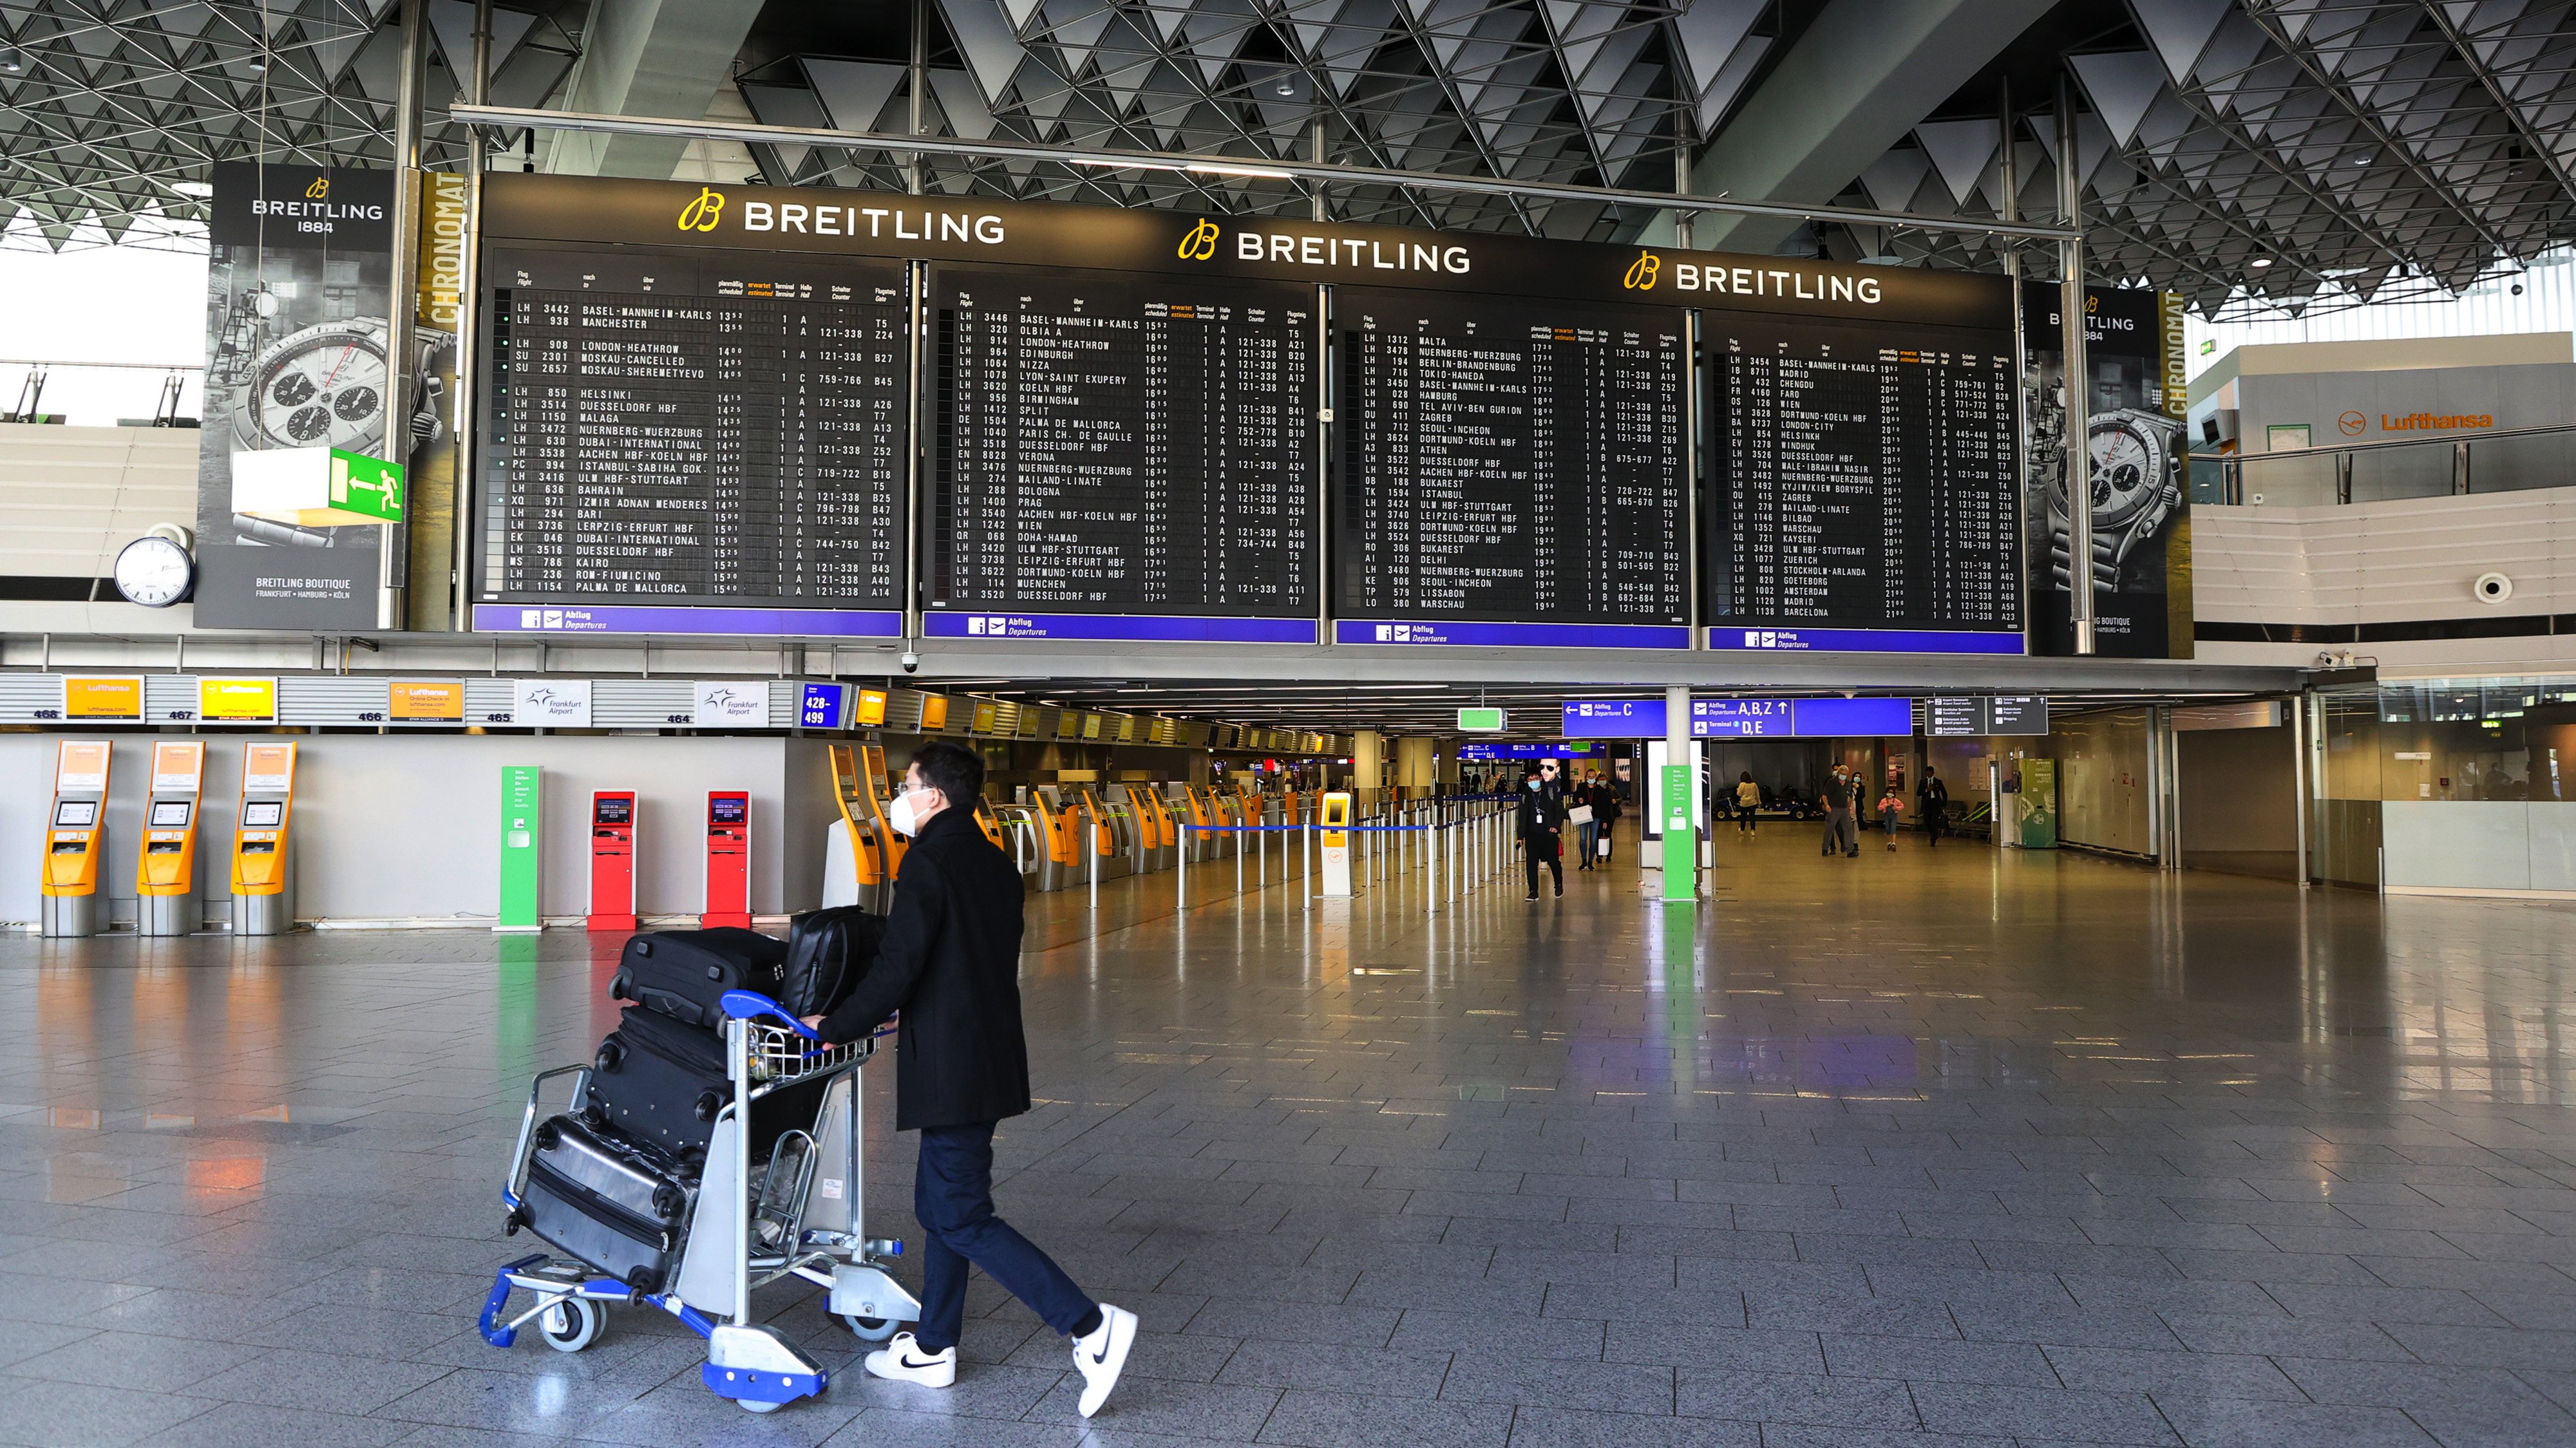 Lufthansa, Deutsche Bahn Fast Train Service Offers Alternative to Short Haul Flights